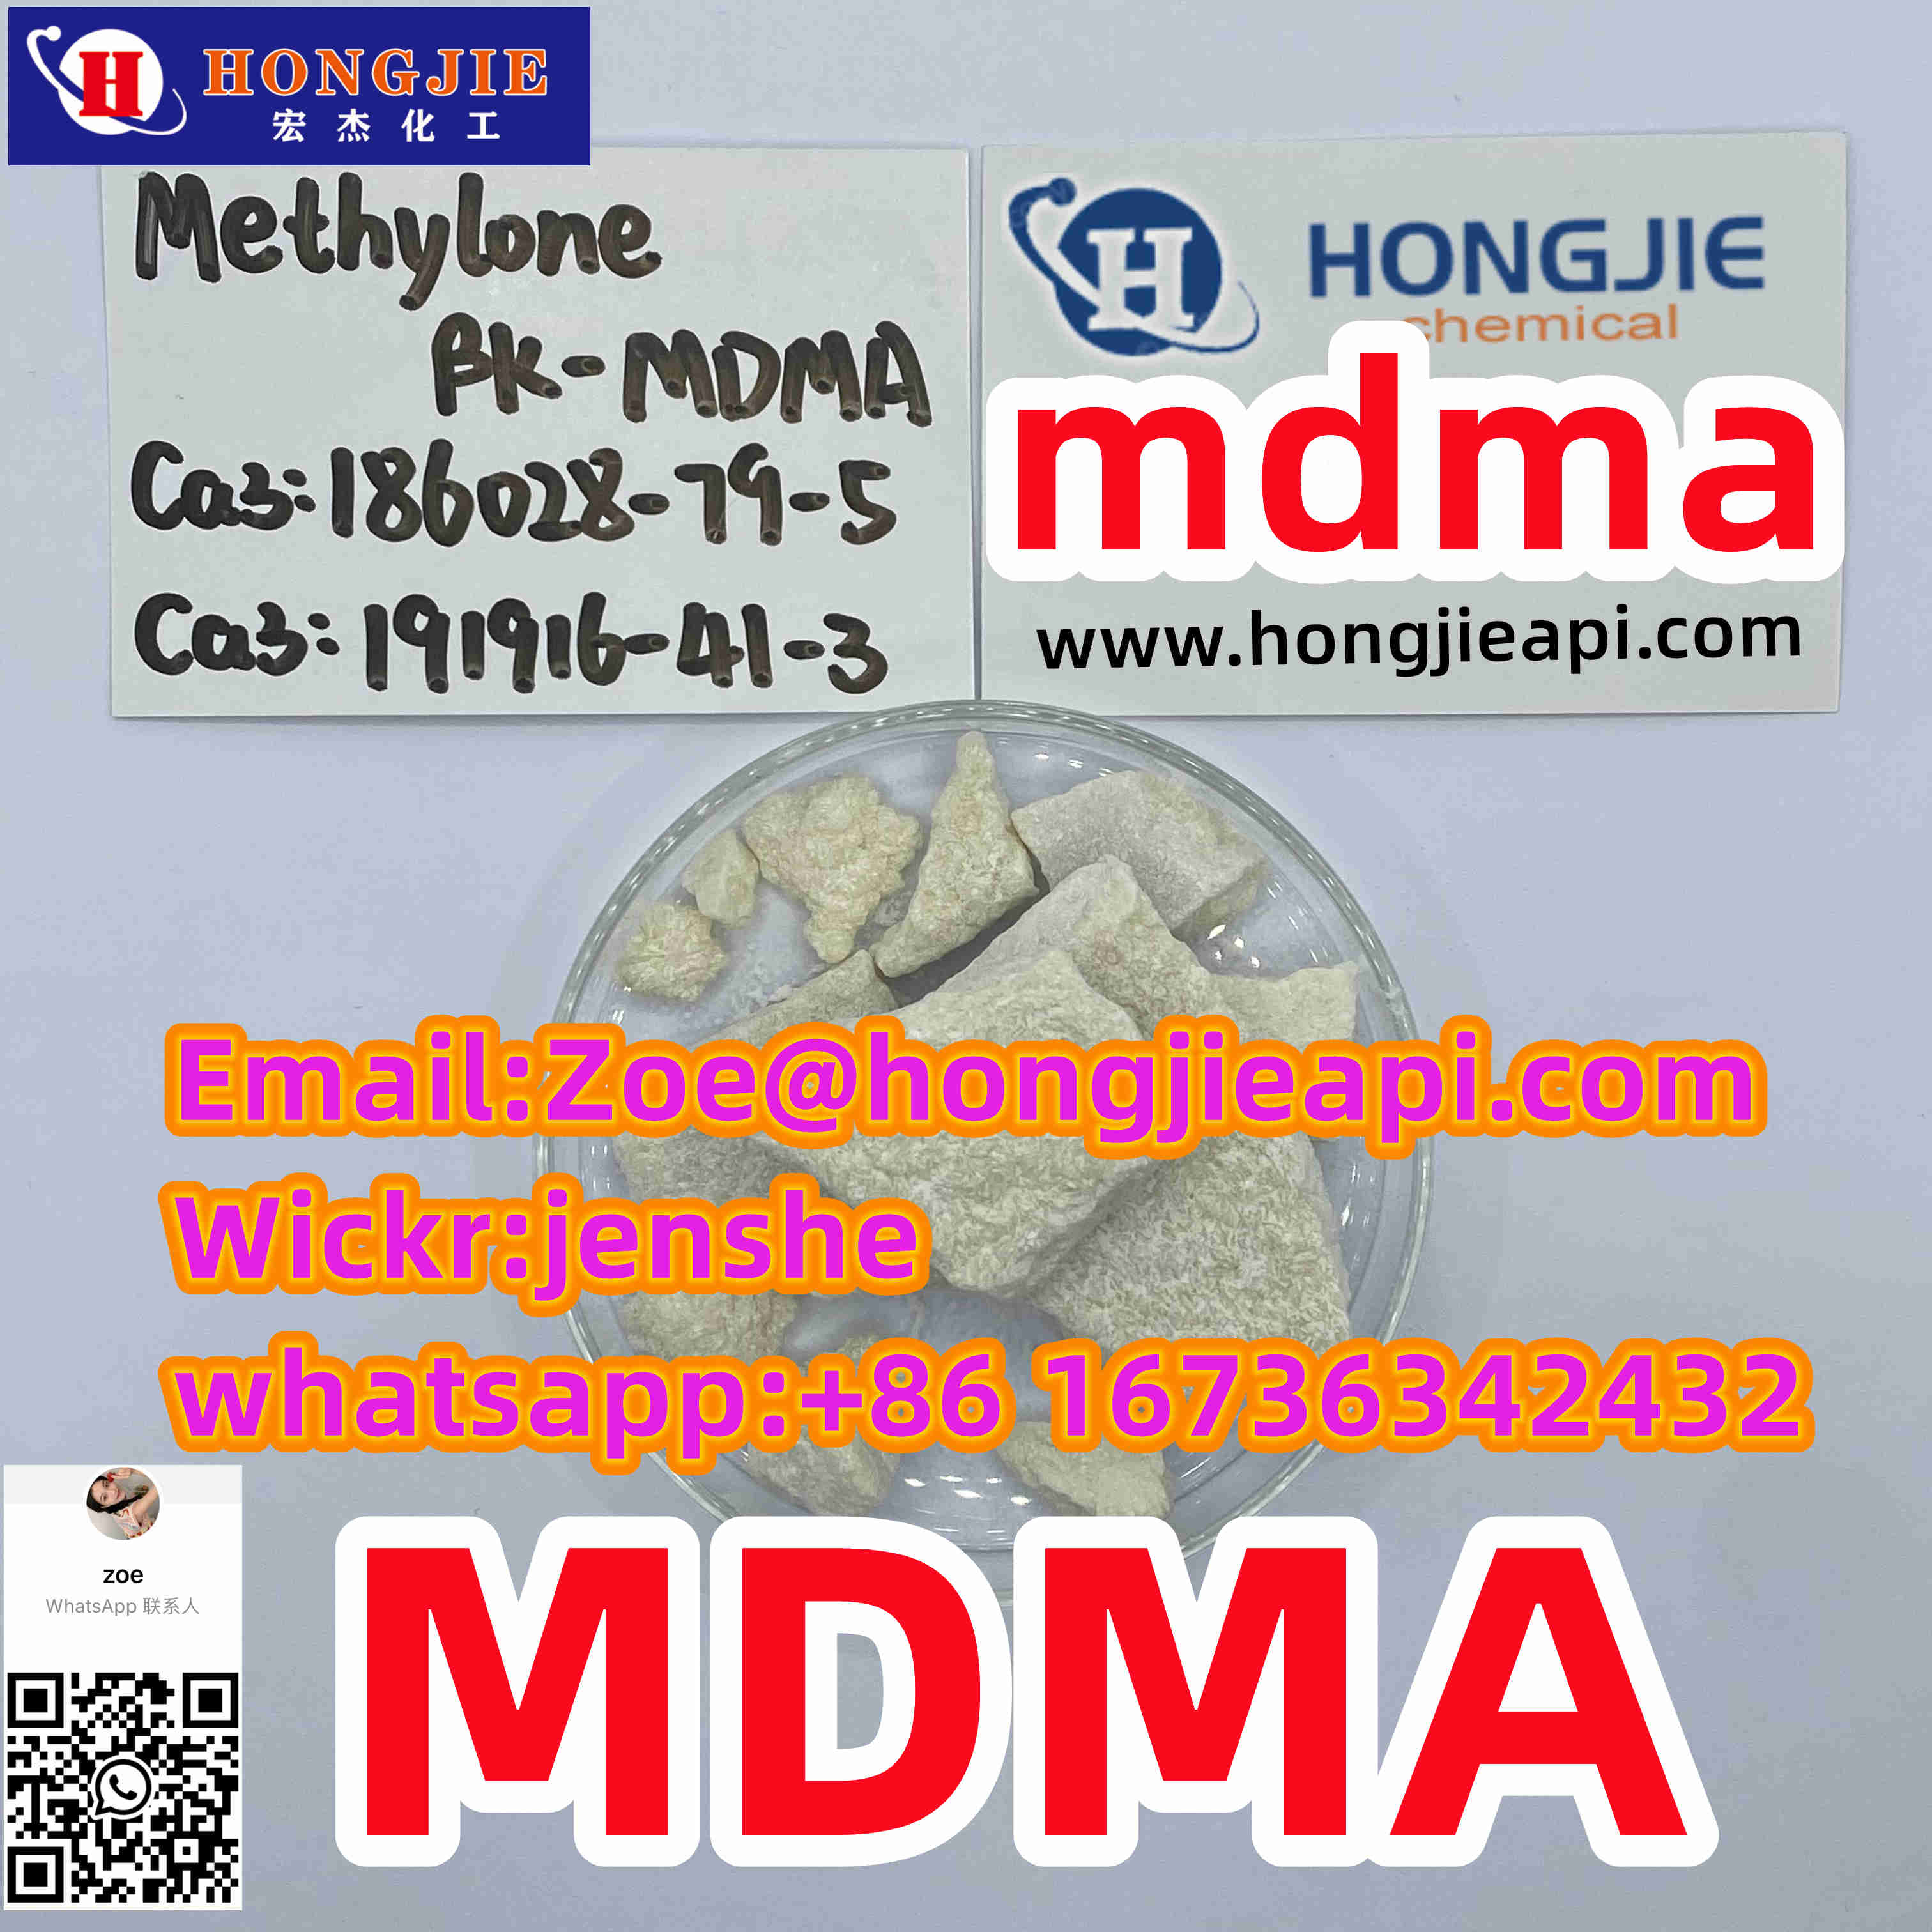 2-Methylamino bk-mdma CAS 186028-79-5/CAS 191916-41-3